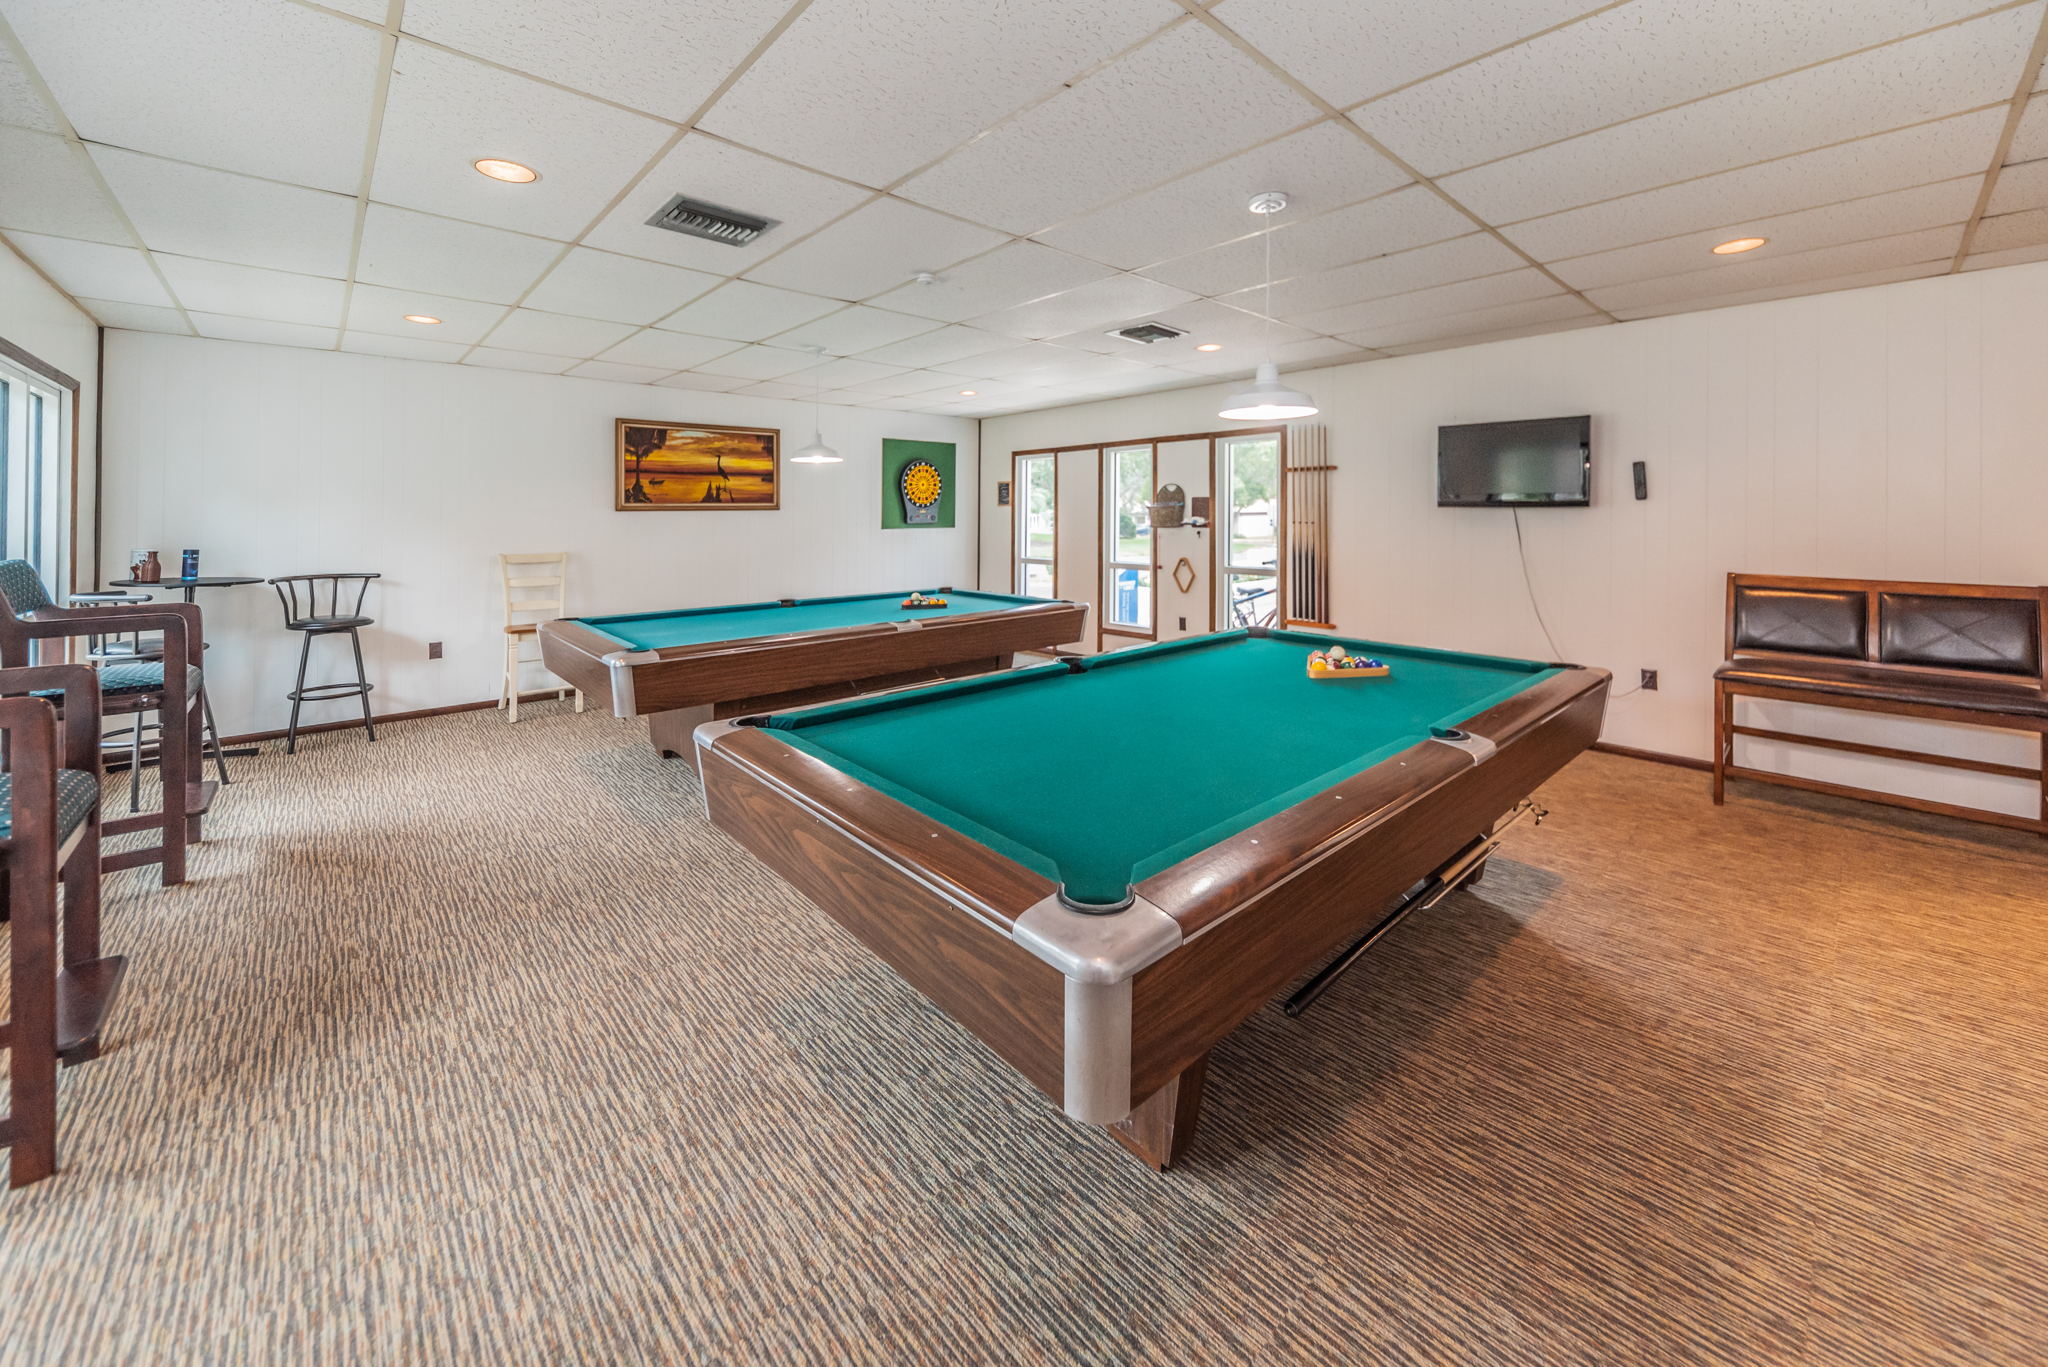 18-Green Dolphin Club Billiards Room